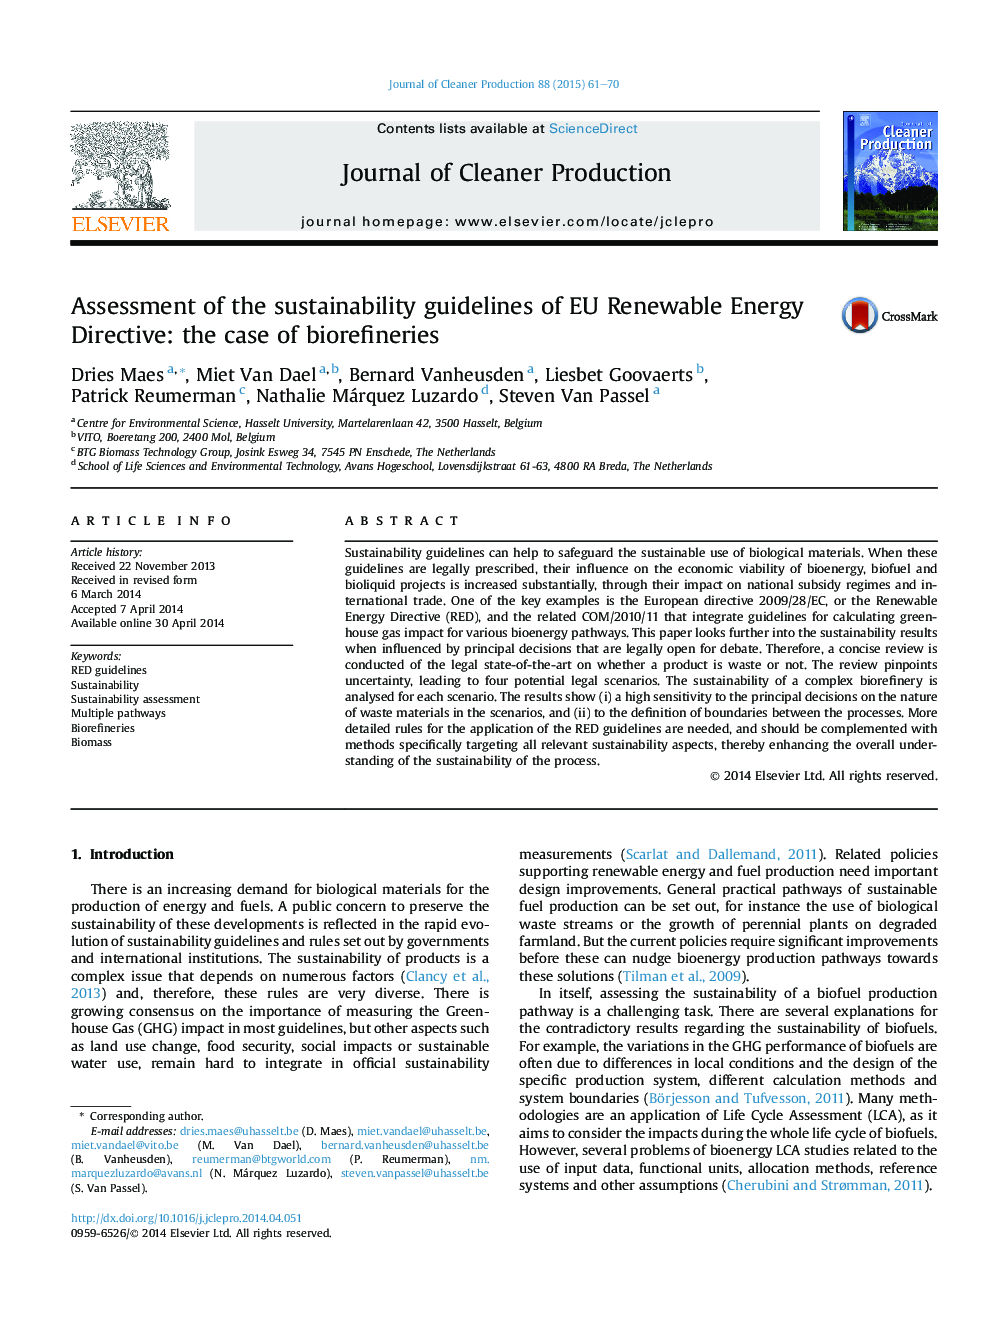 ارزیابی دستورالعمل های پایداری اتحادیه اروپا در مورد انرژی های تجدید پذیر: مورد سوخت زیستی 